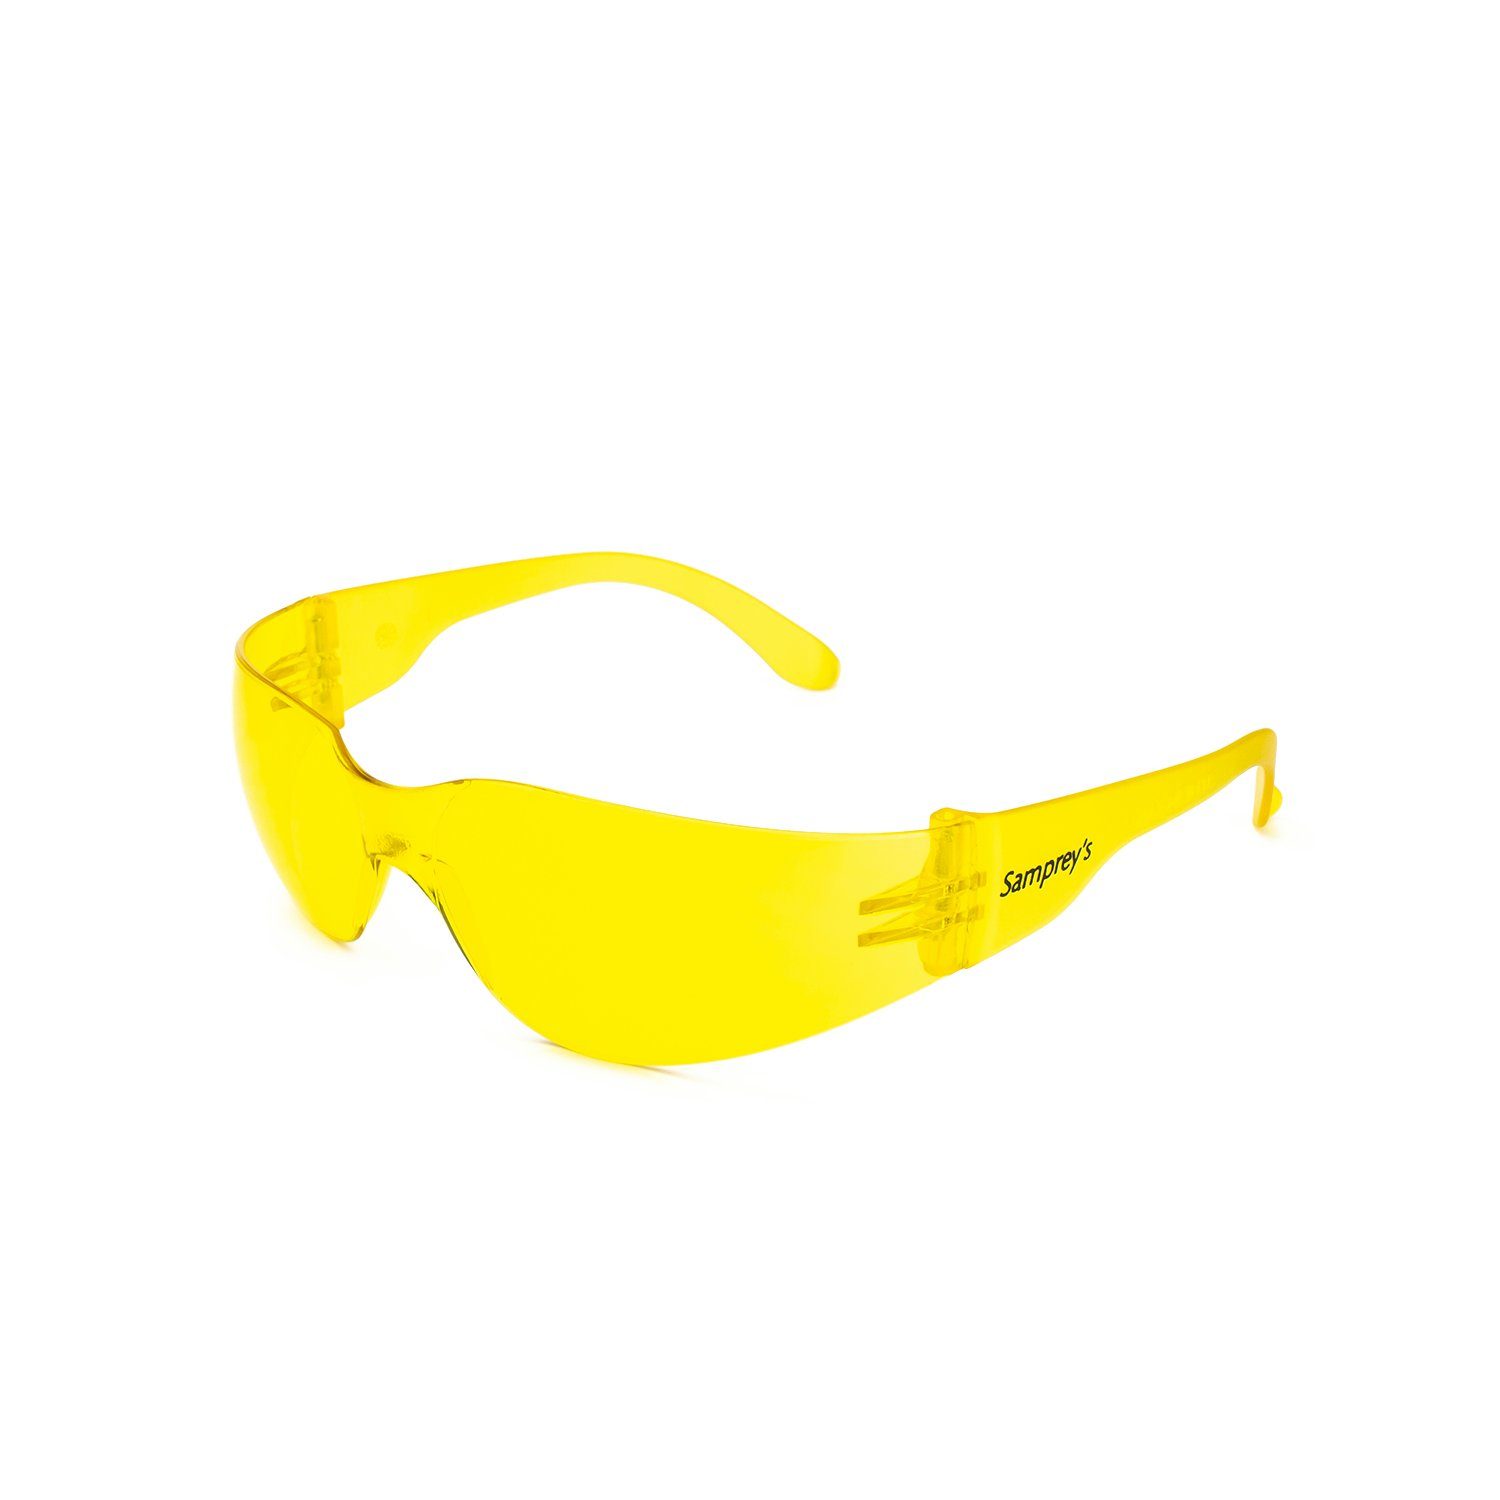 Avacore Arbeitsschutzbrille, mit UV400 Filter Gelb